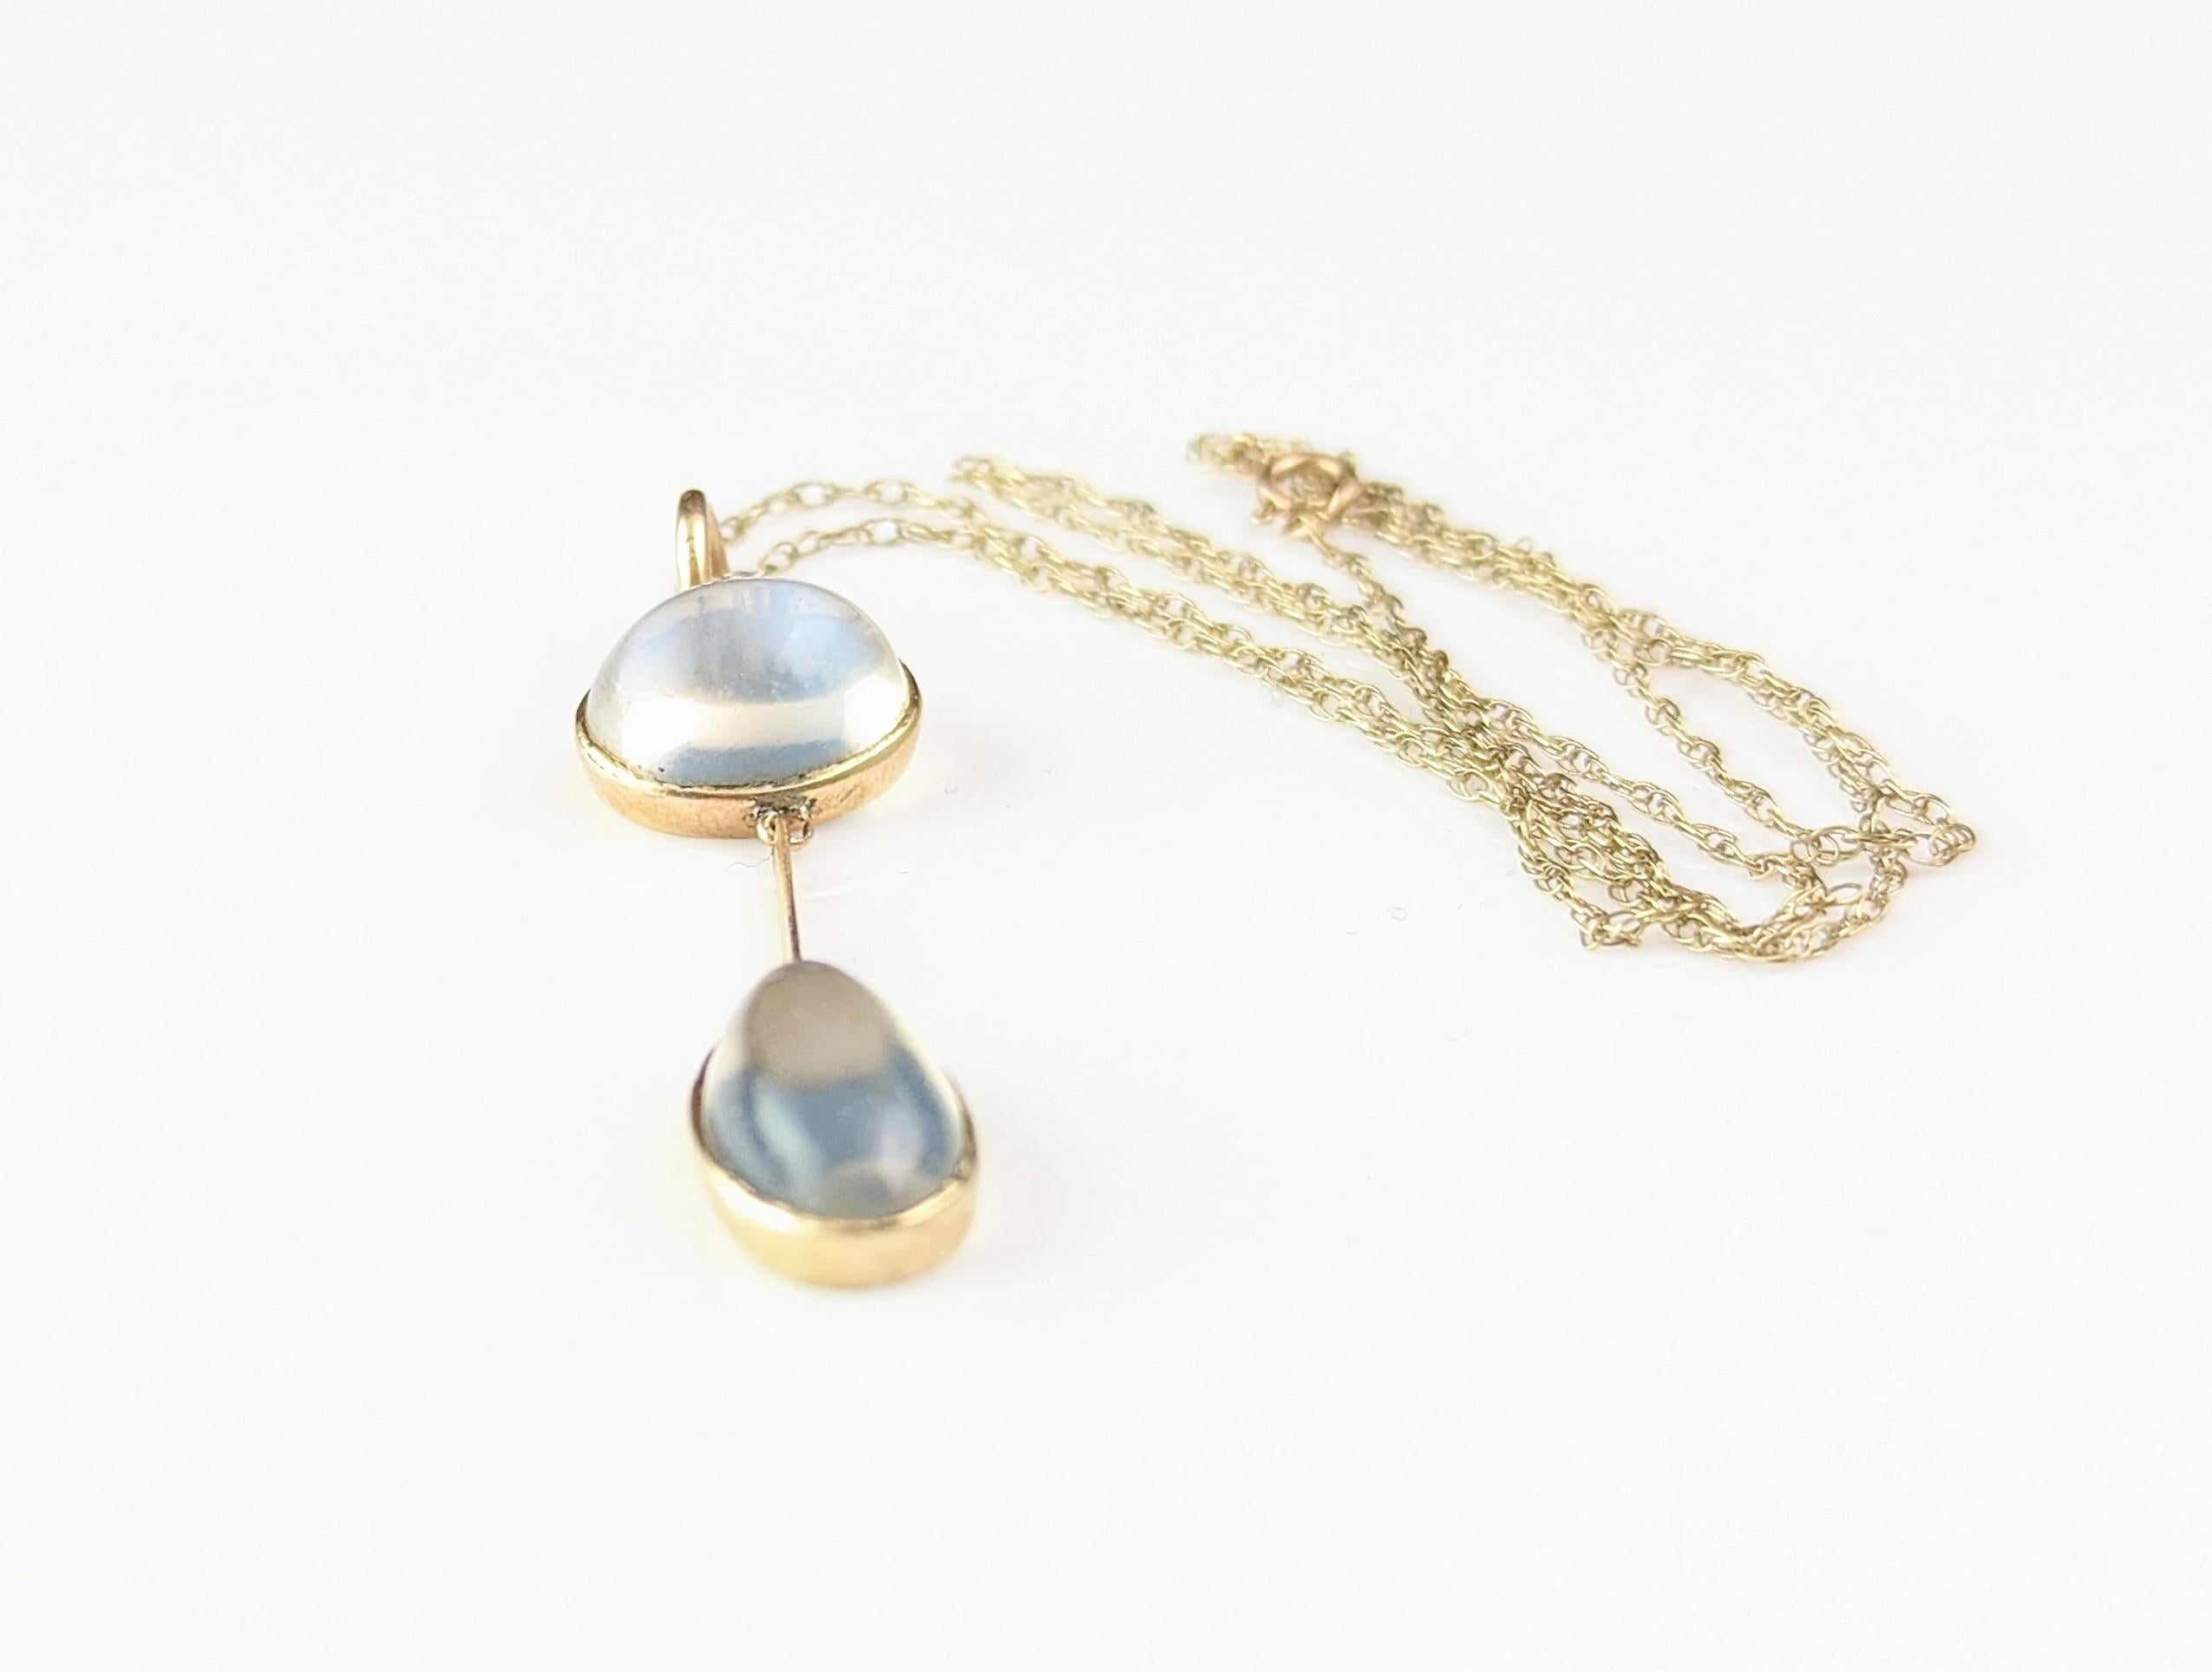 Antique Art Deco Moonstone pendant necklace, 9k gold  4